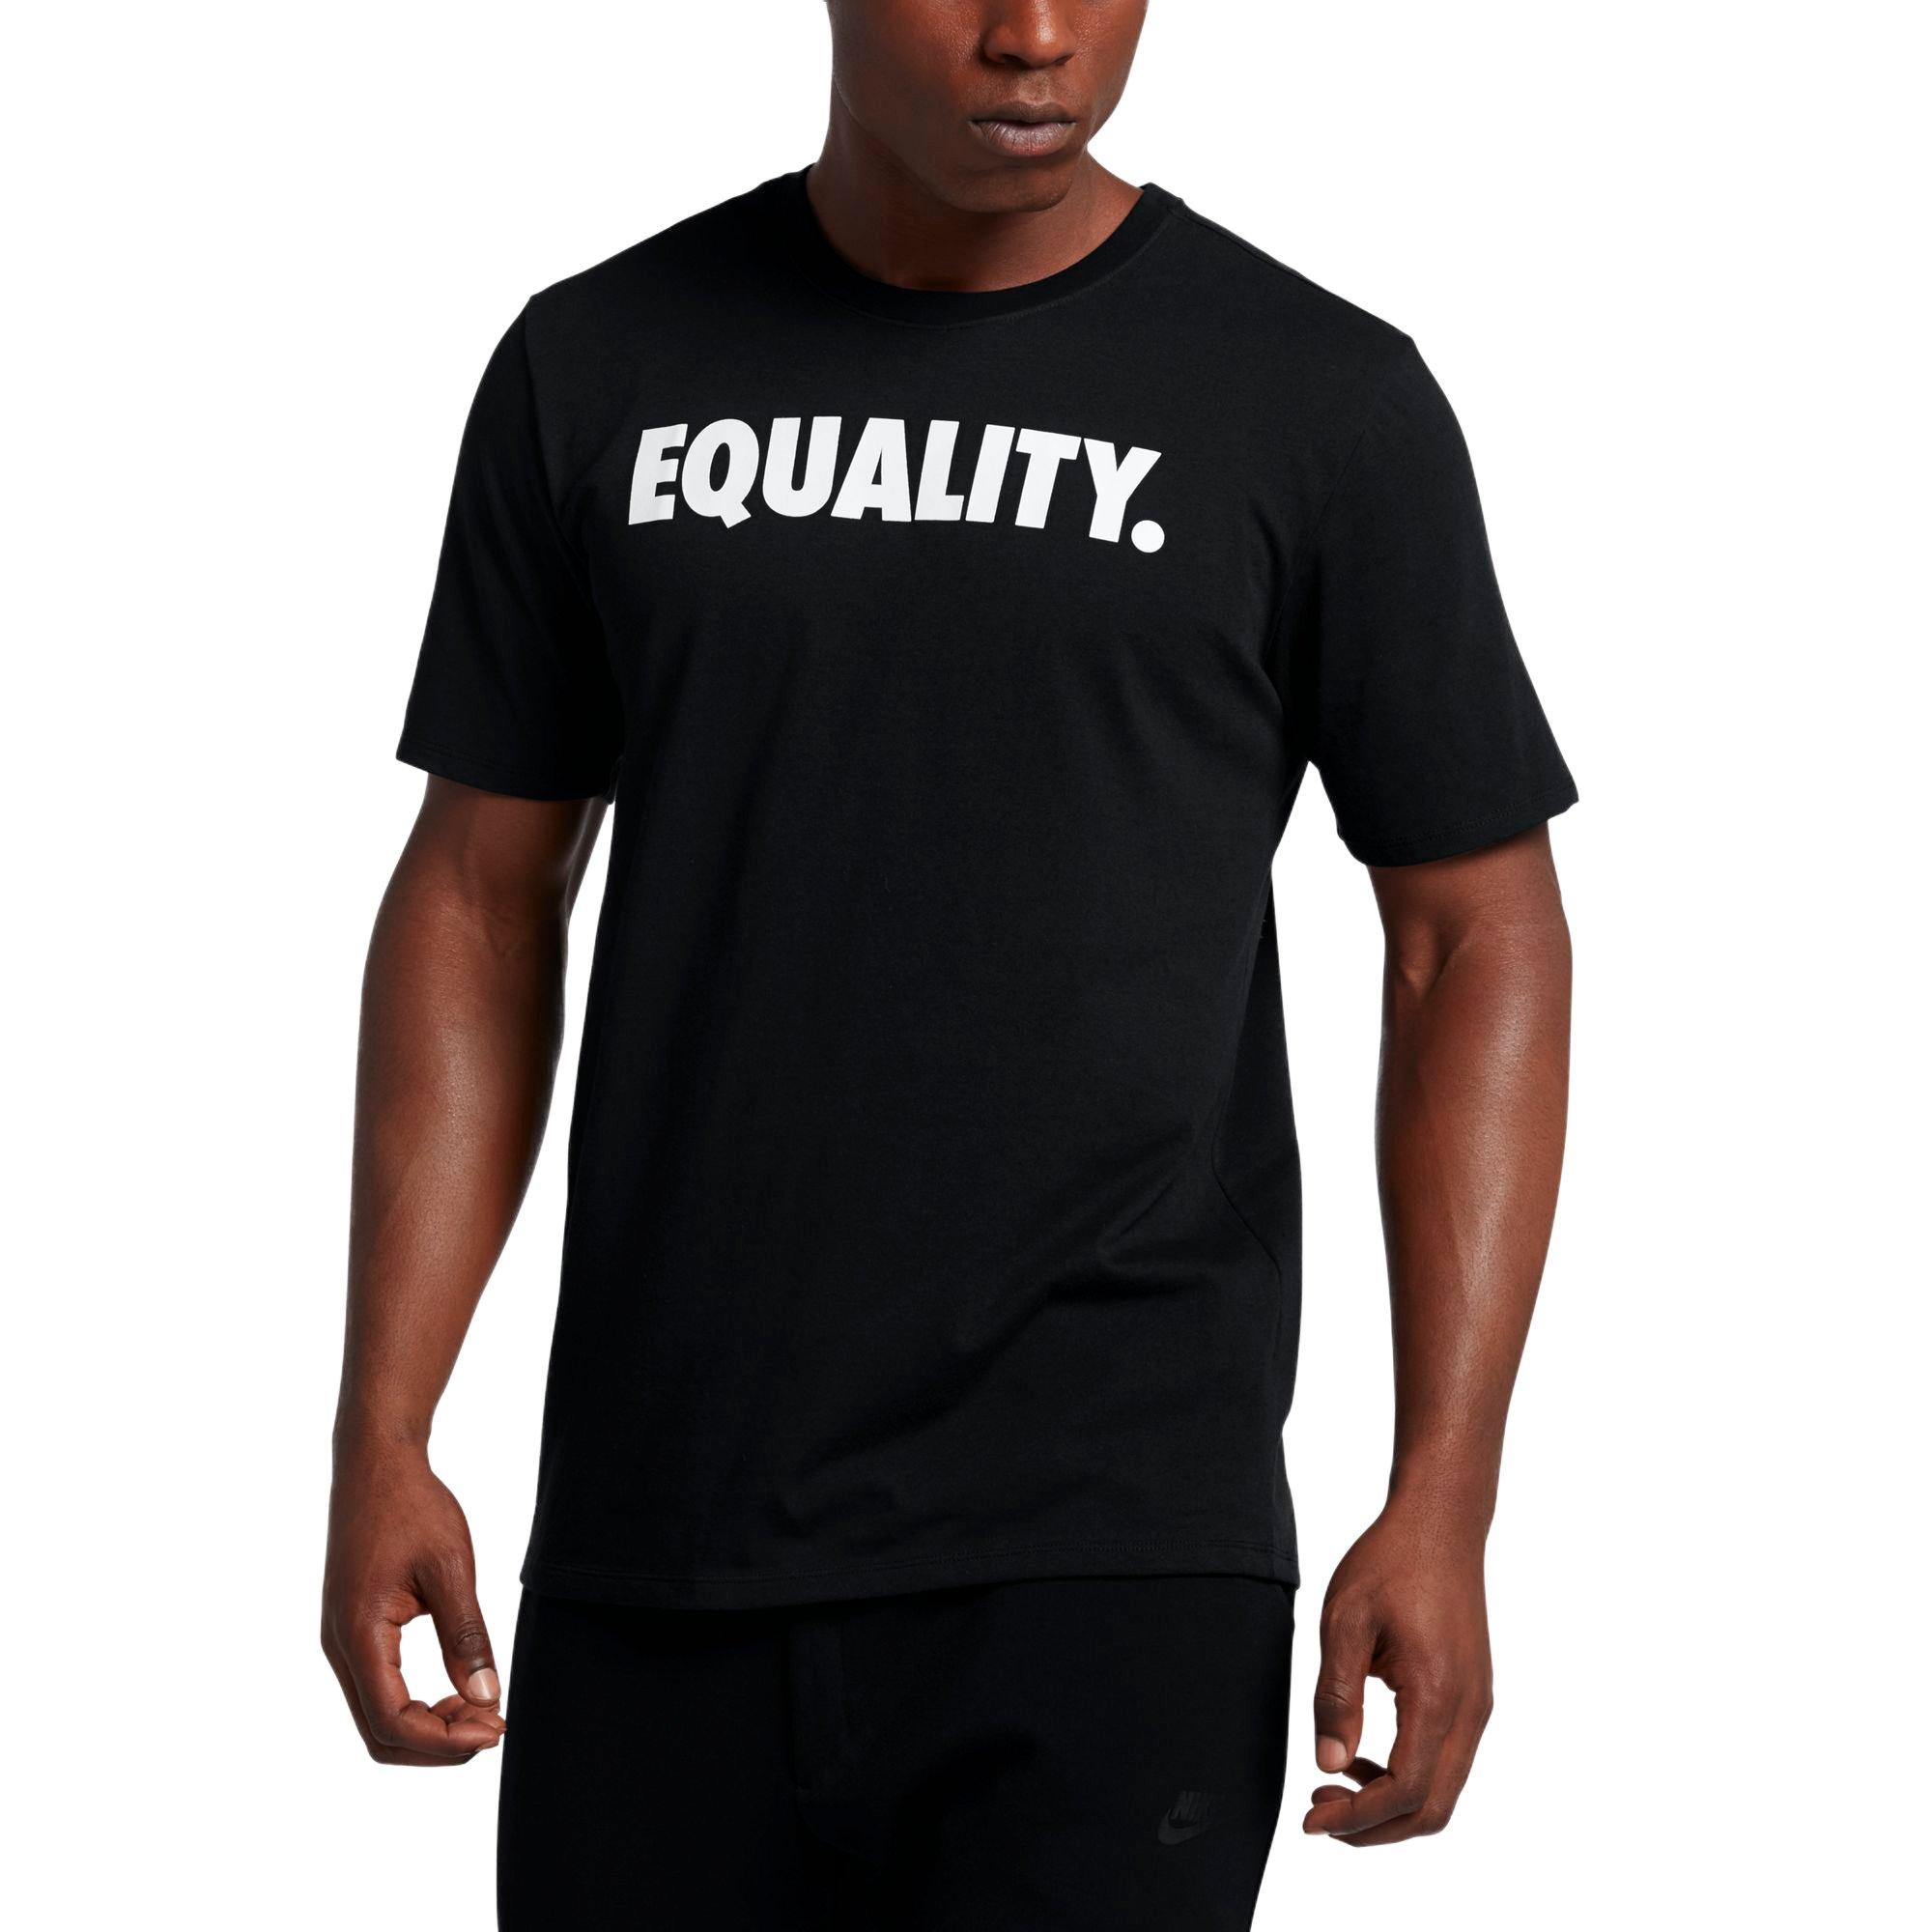 lebron equality shirt